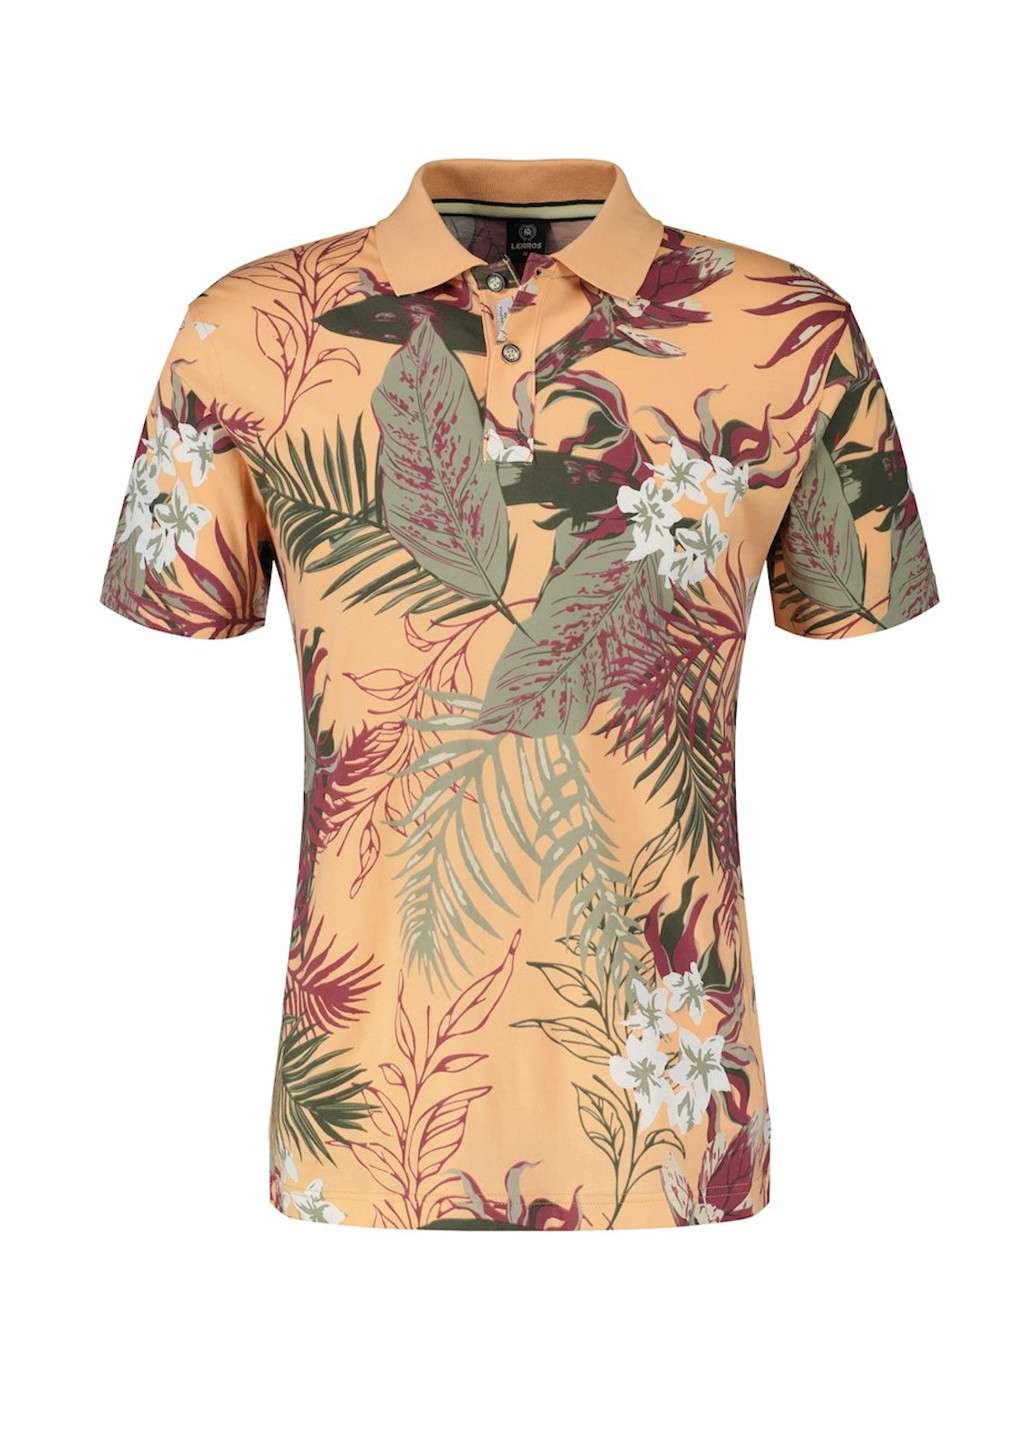 Цветная футболка-поло для мужчин Lerros с цветочным принтом